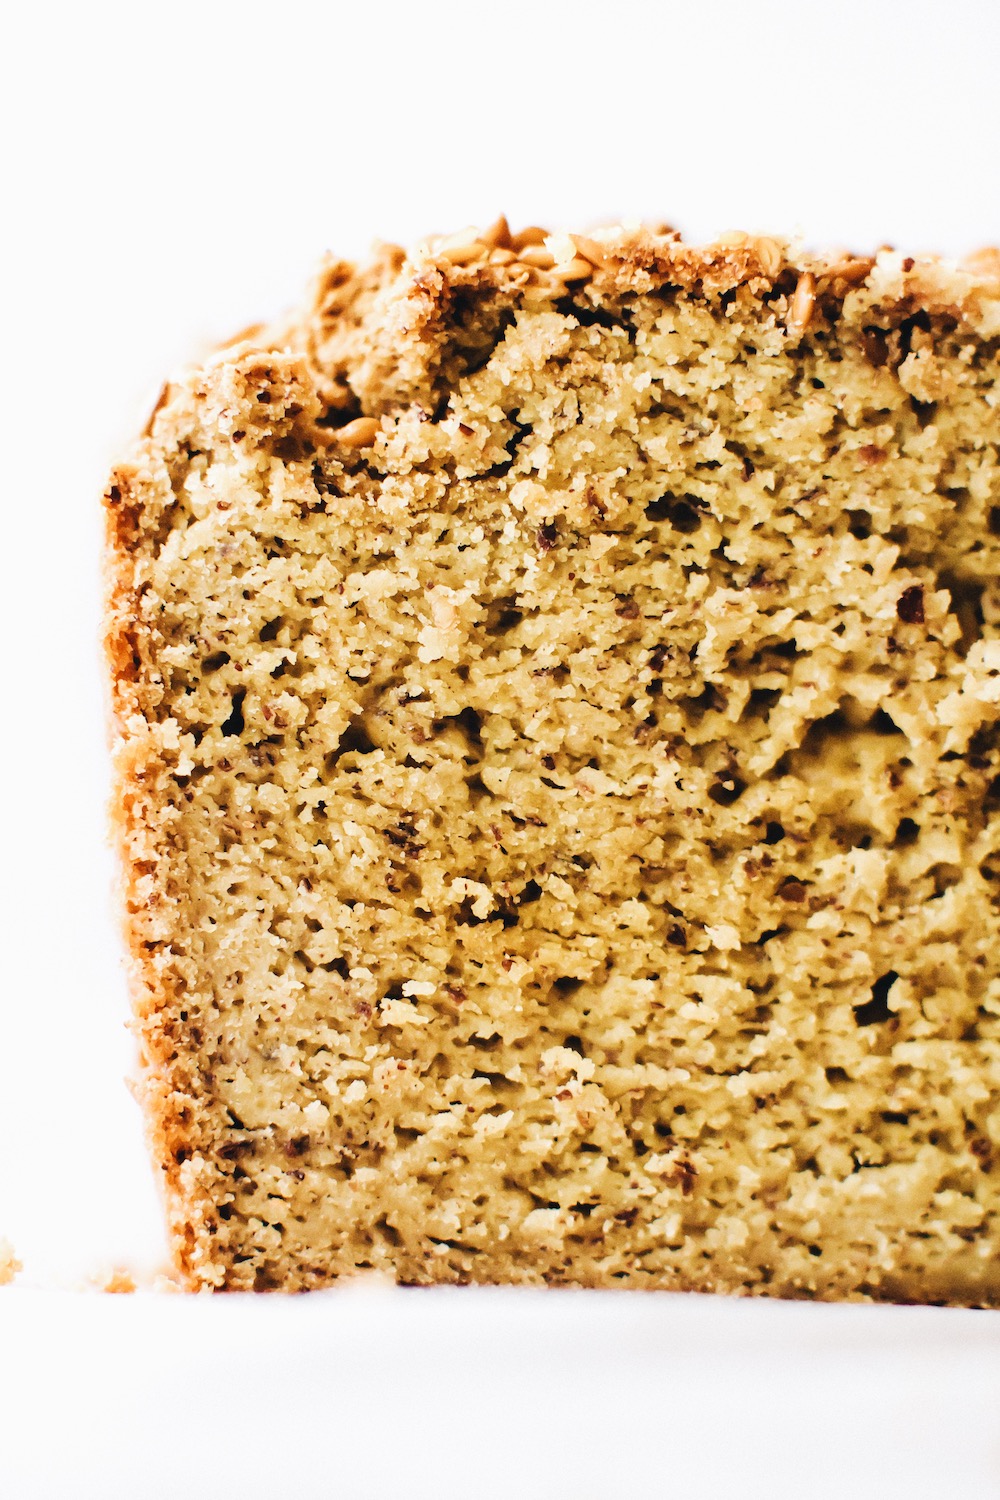 Gluten-Free Quinoa Bread